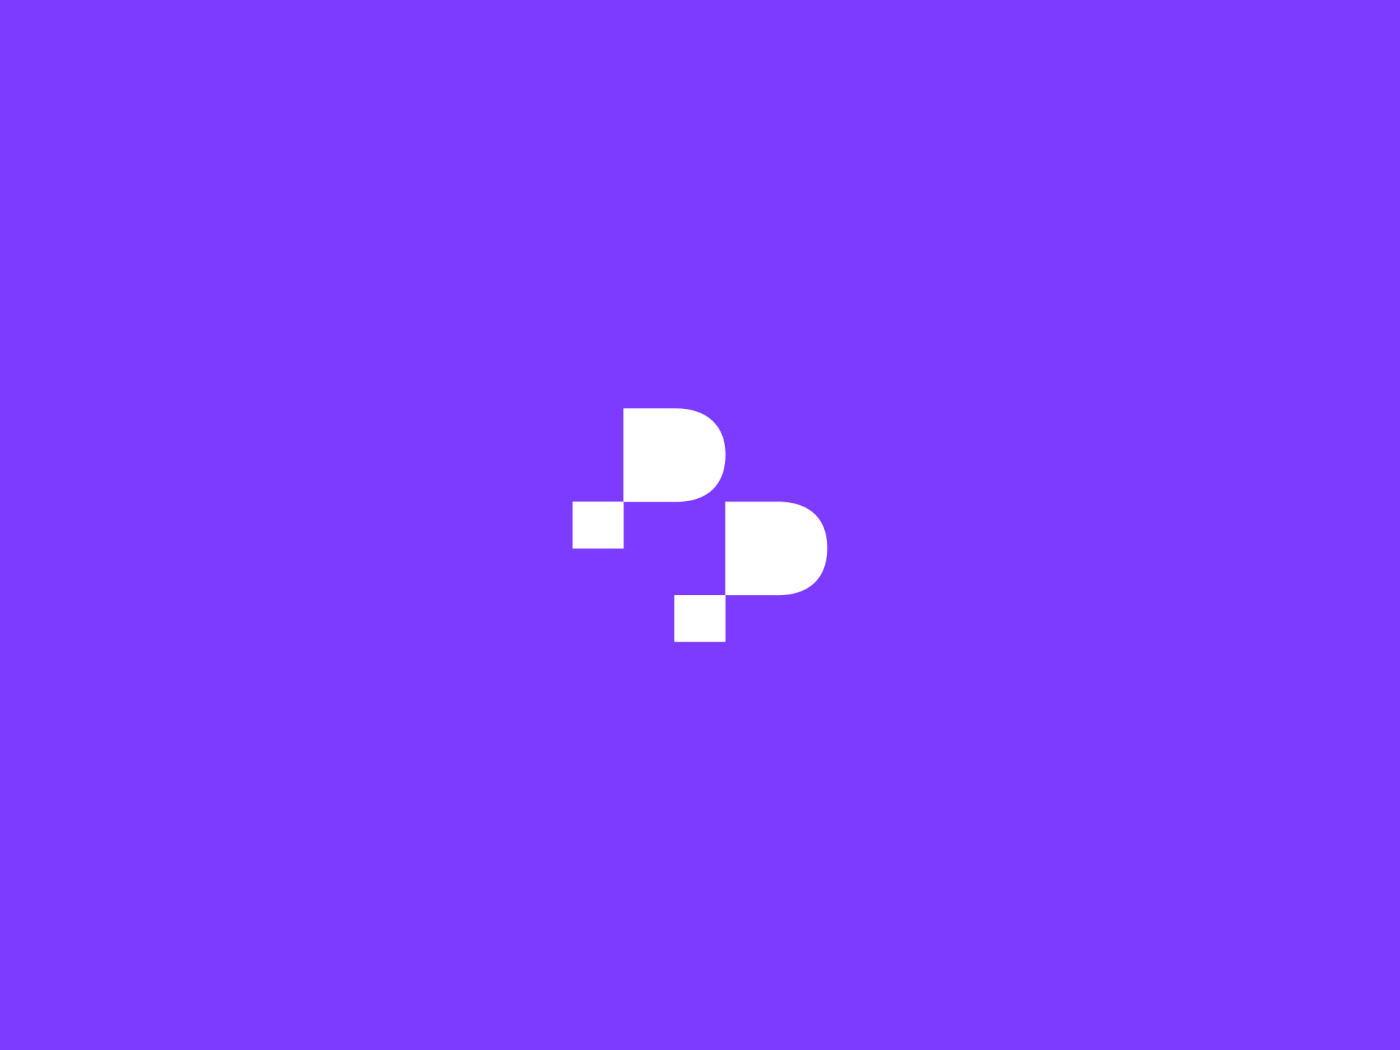 Logo motion for PowerPulse's visual identity design.